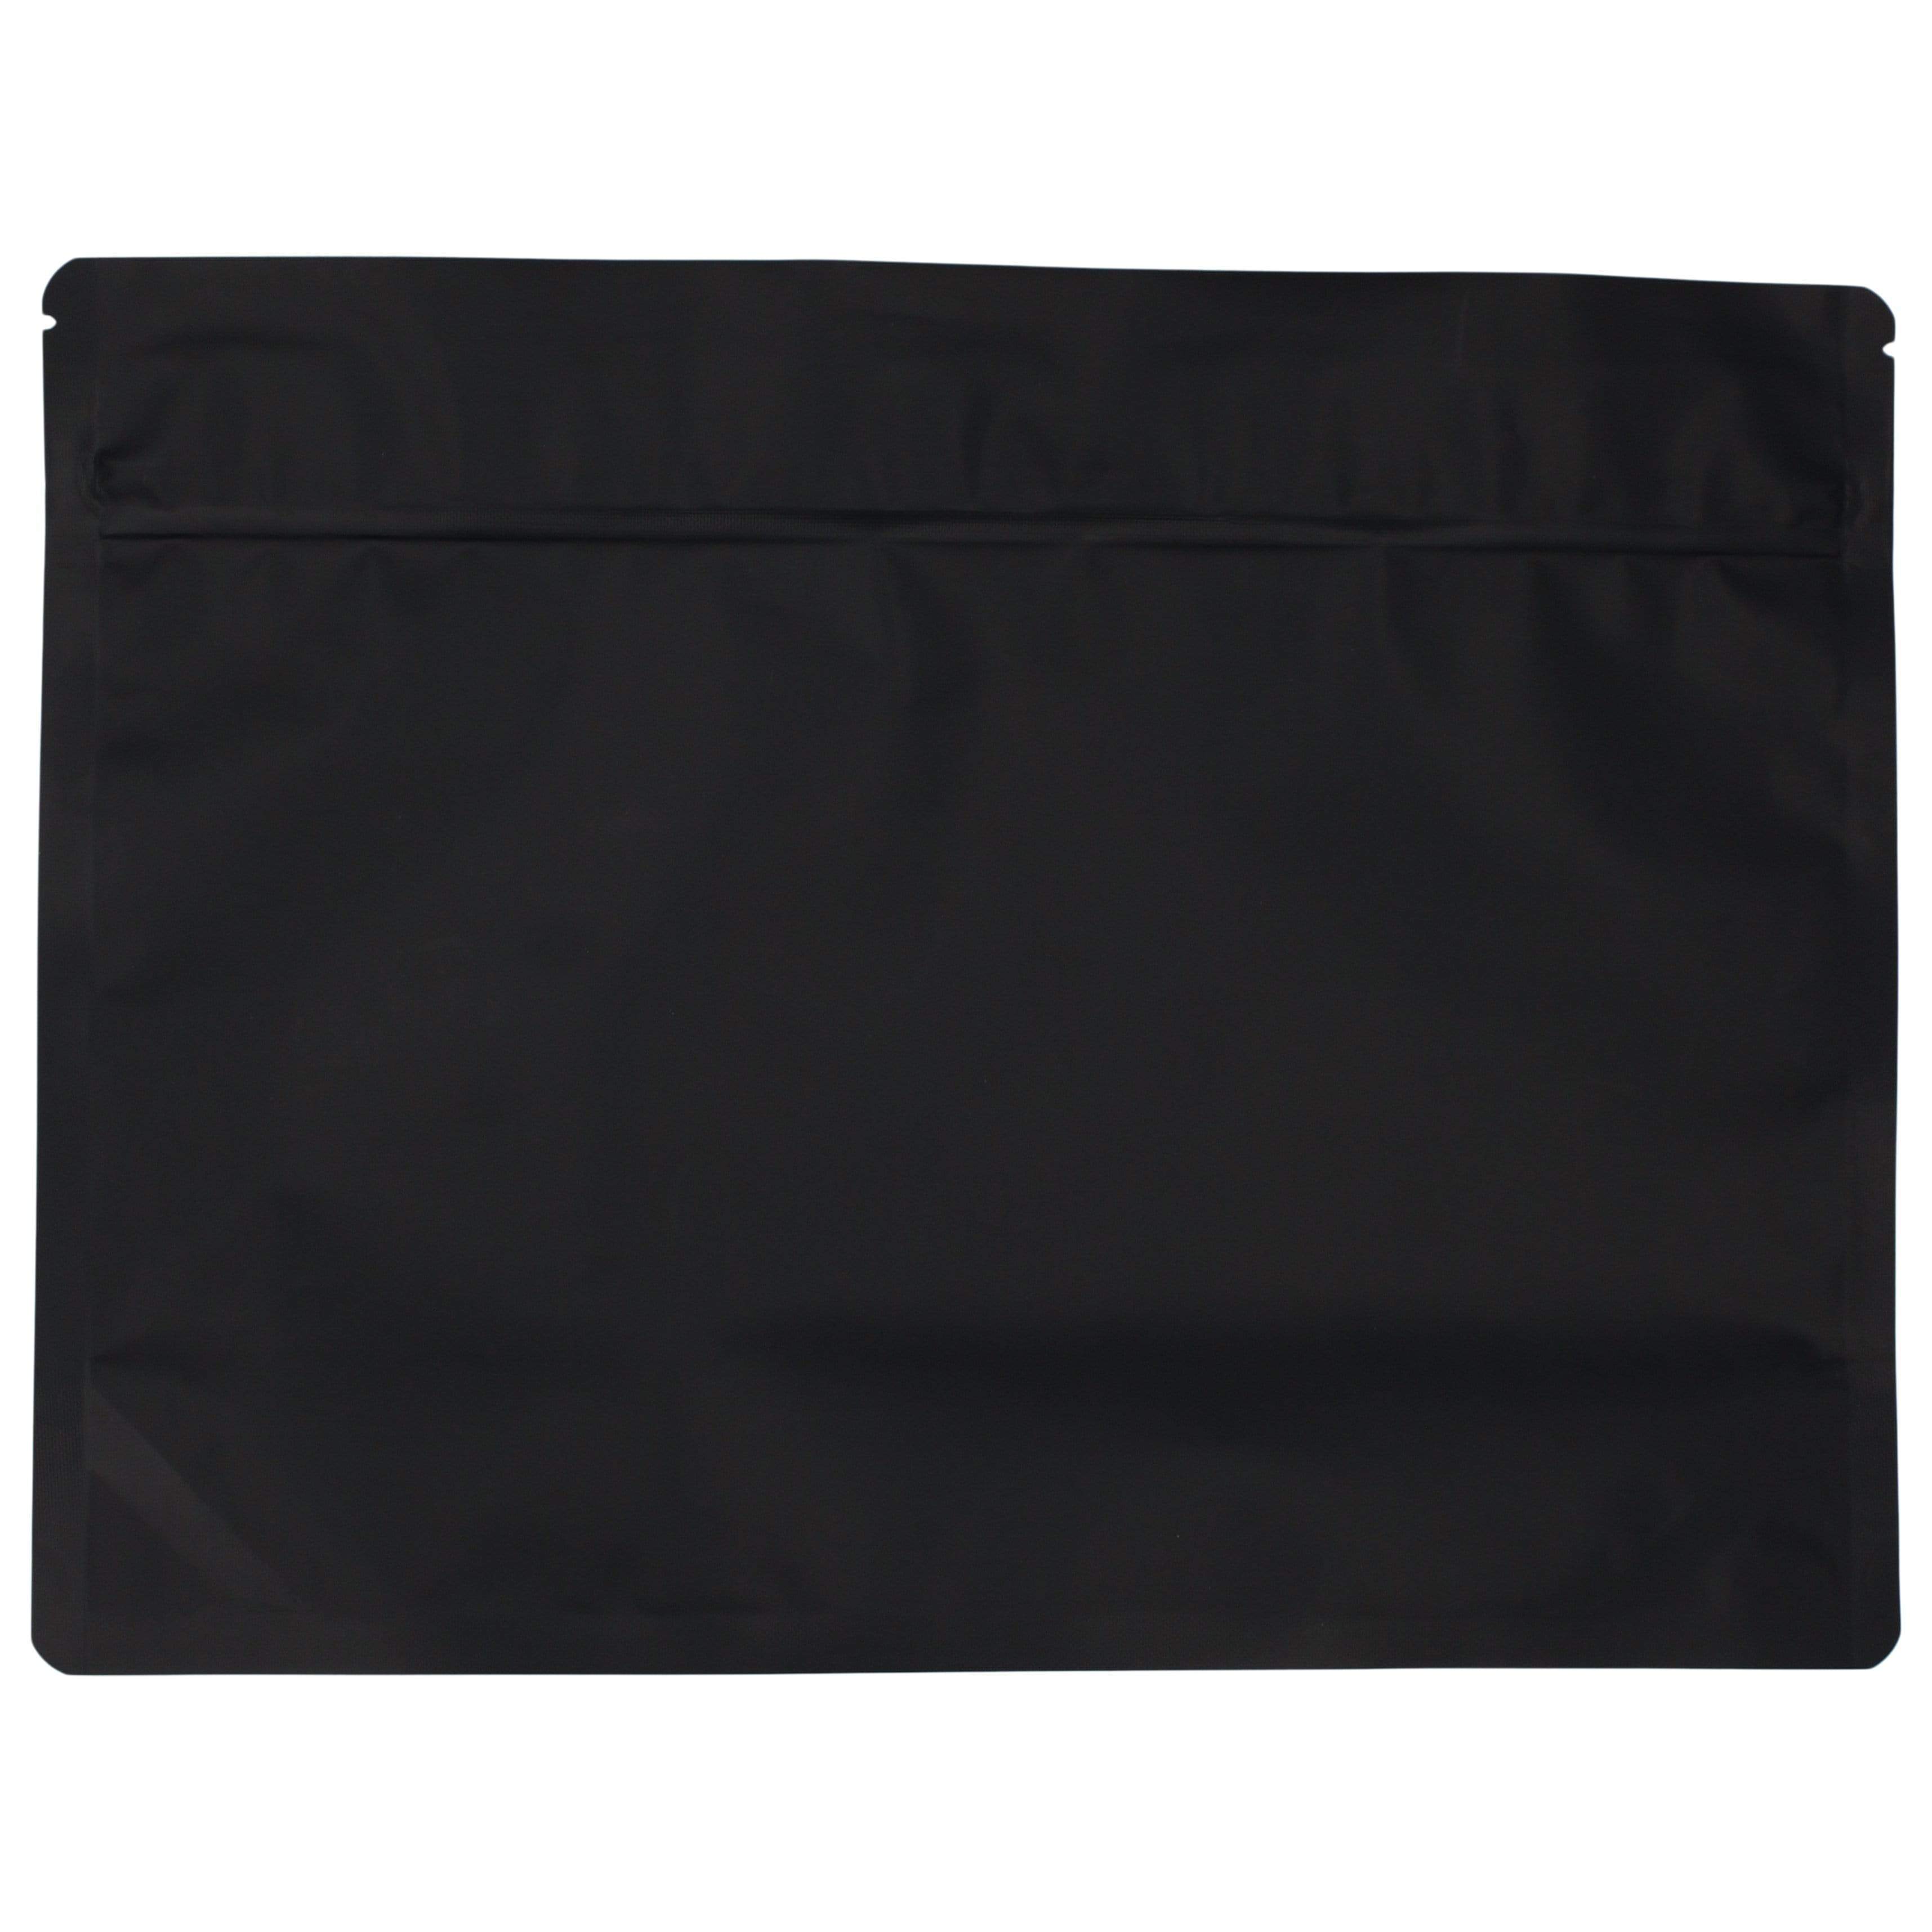 Matte Black Bag King Large Child-Resistant Opaque Exit Bag (1/2 lb) 9.0" x 12.0"